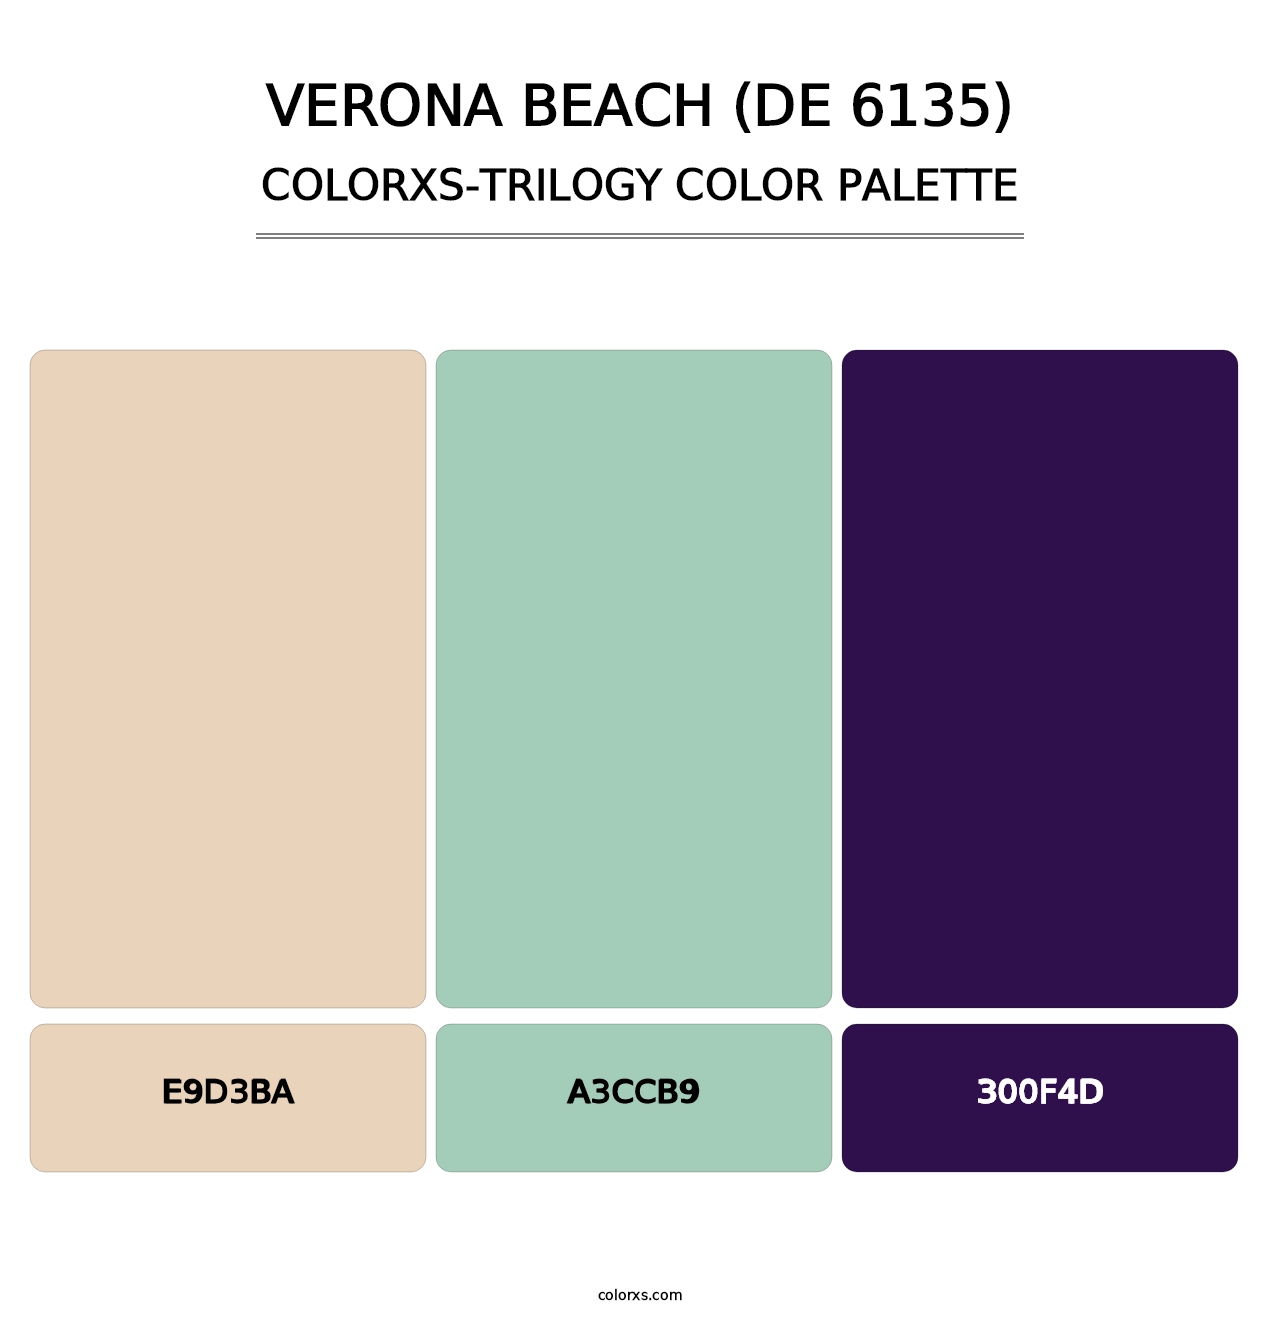 Verona Beach (DE 6135) - Colorxs Trilogy Palette